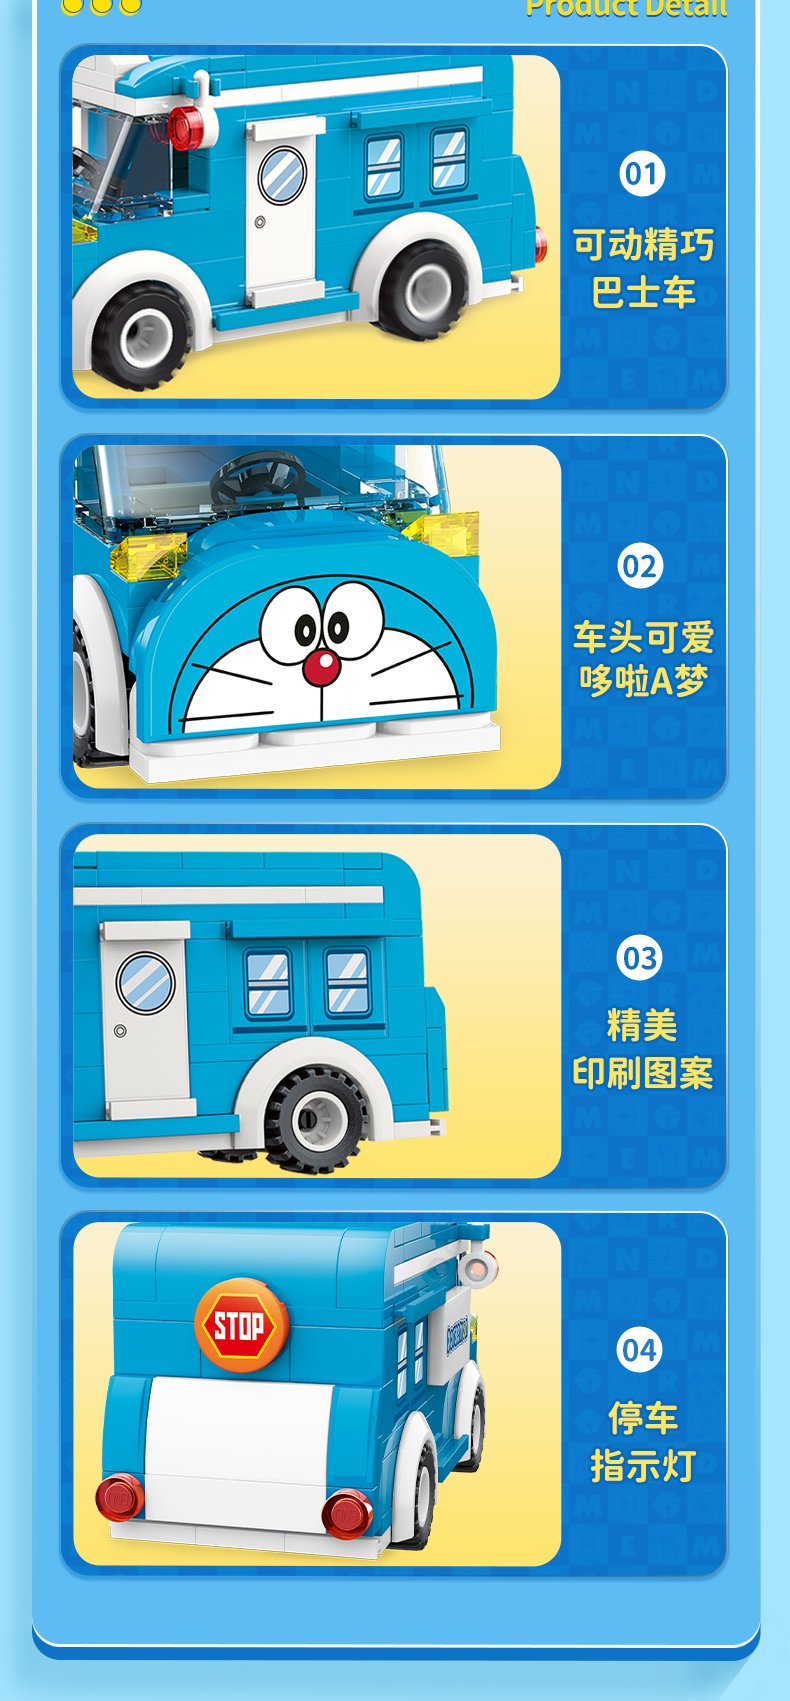 Keeppley K20407 Doraemon Bus blocs de construction ensemble de jouets